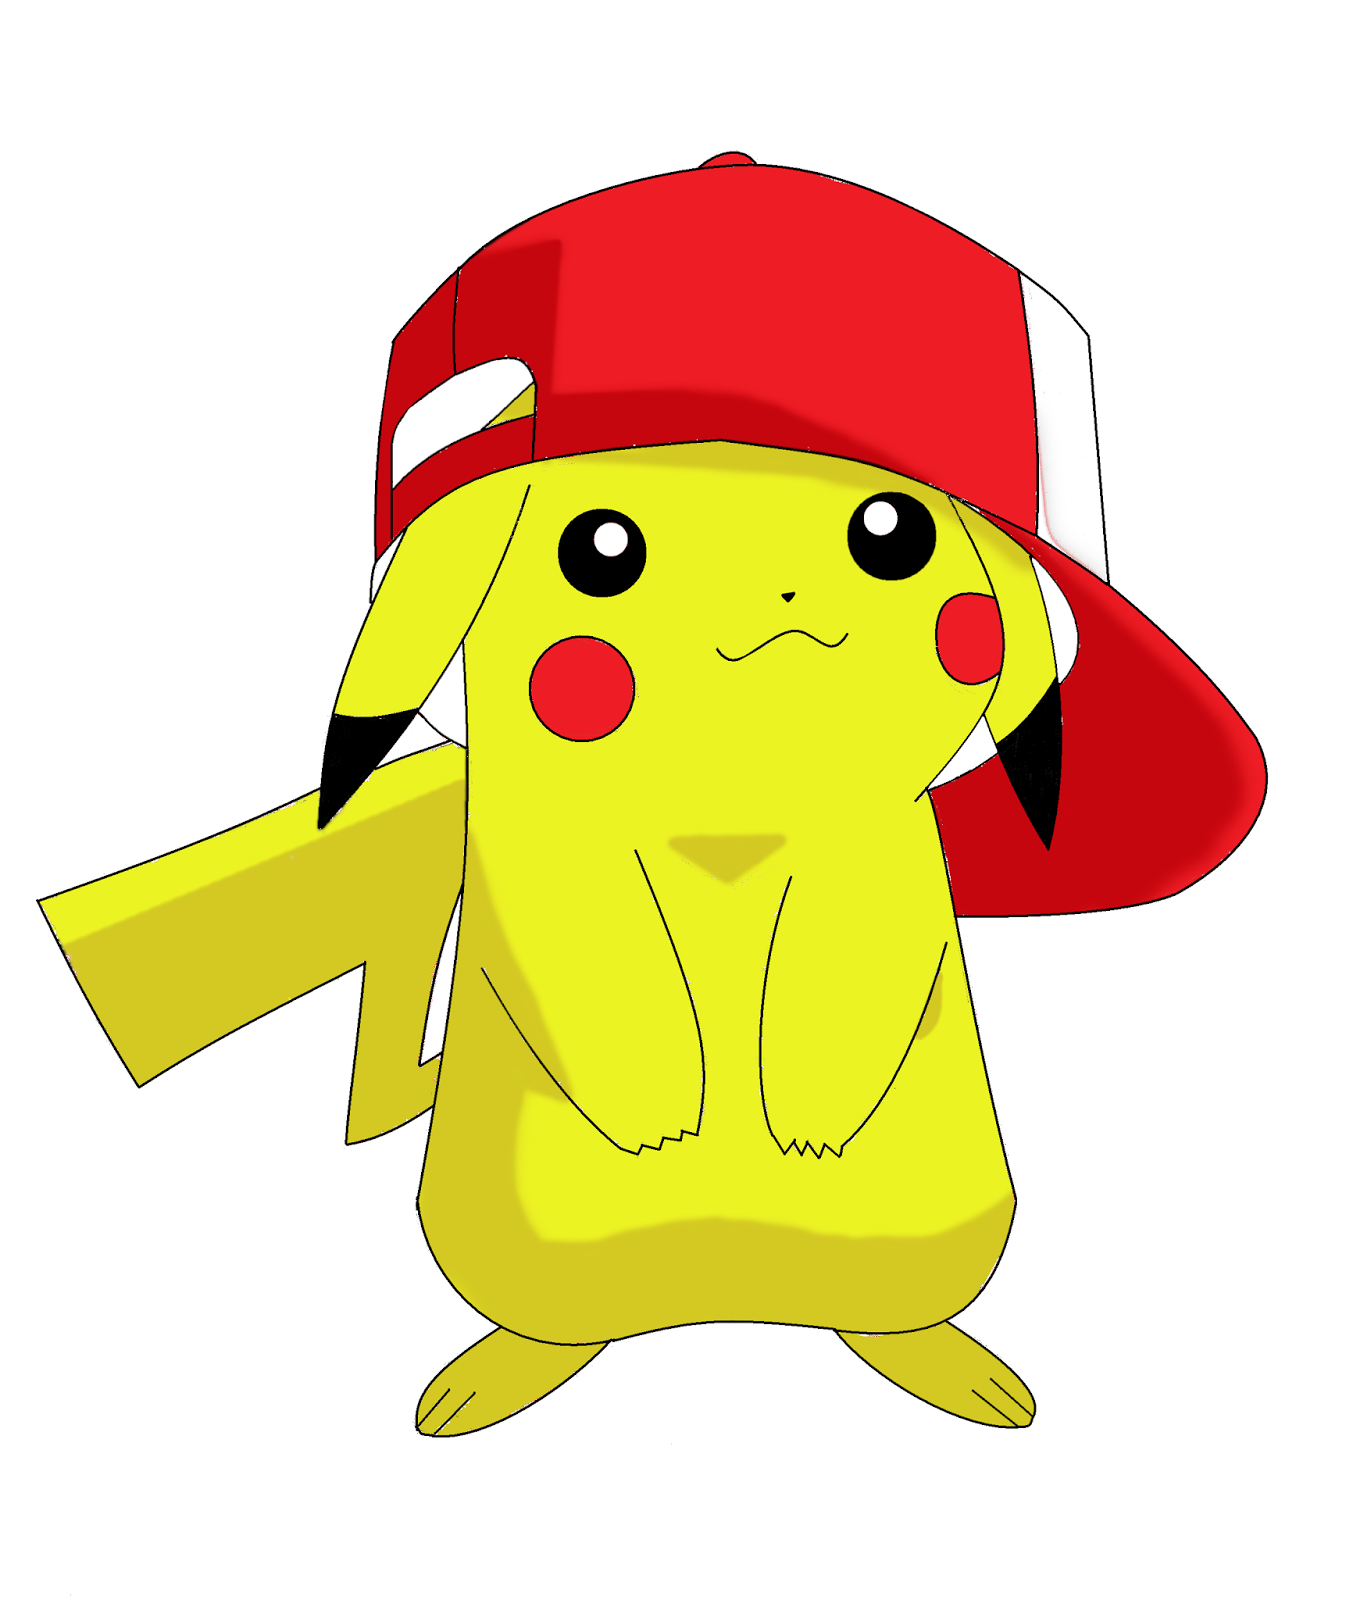 Pokemon Cosplay: Adorable Pokemmon Human Pikachu Cosplay Girl